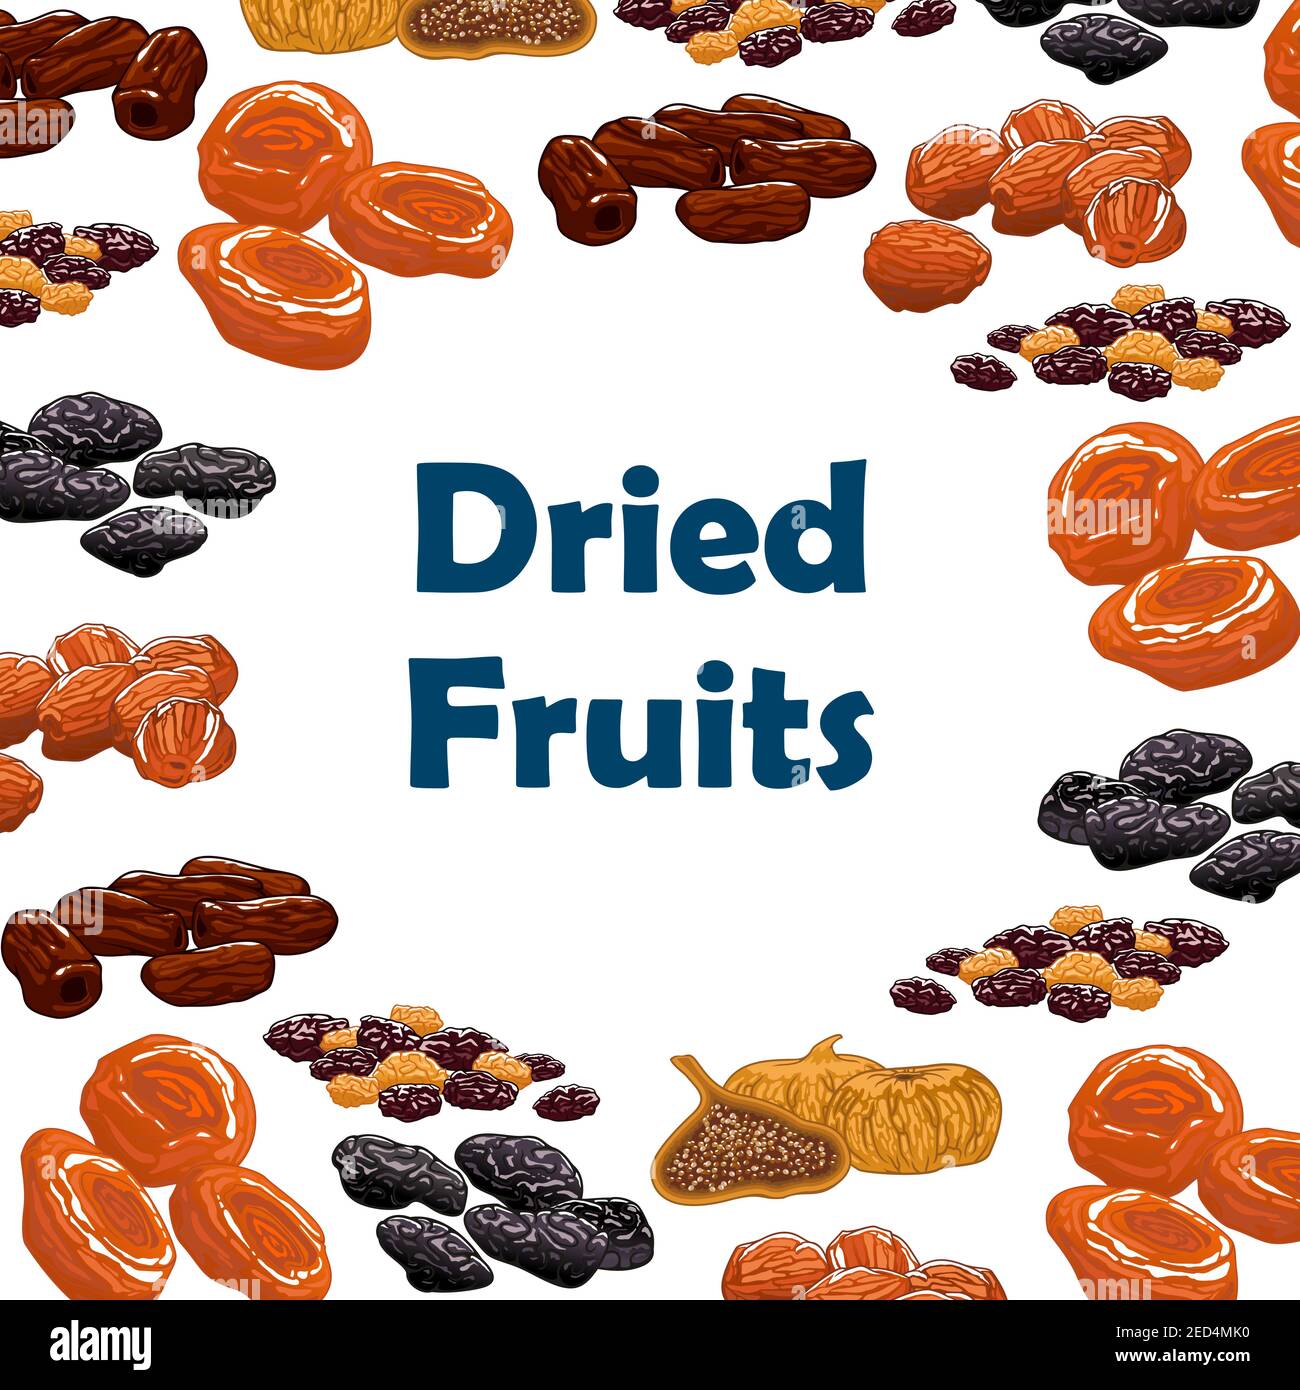 Fruits secs. Affiche vectorielle avec raisins secs nutritifs crus, dattes, figues, abricots, prunes, pruneaux. Sucreries végétariennes et en-cas de desserts Illustration de Vecteur